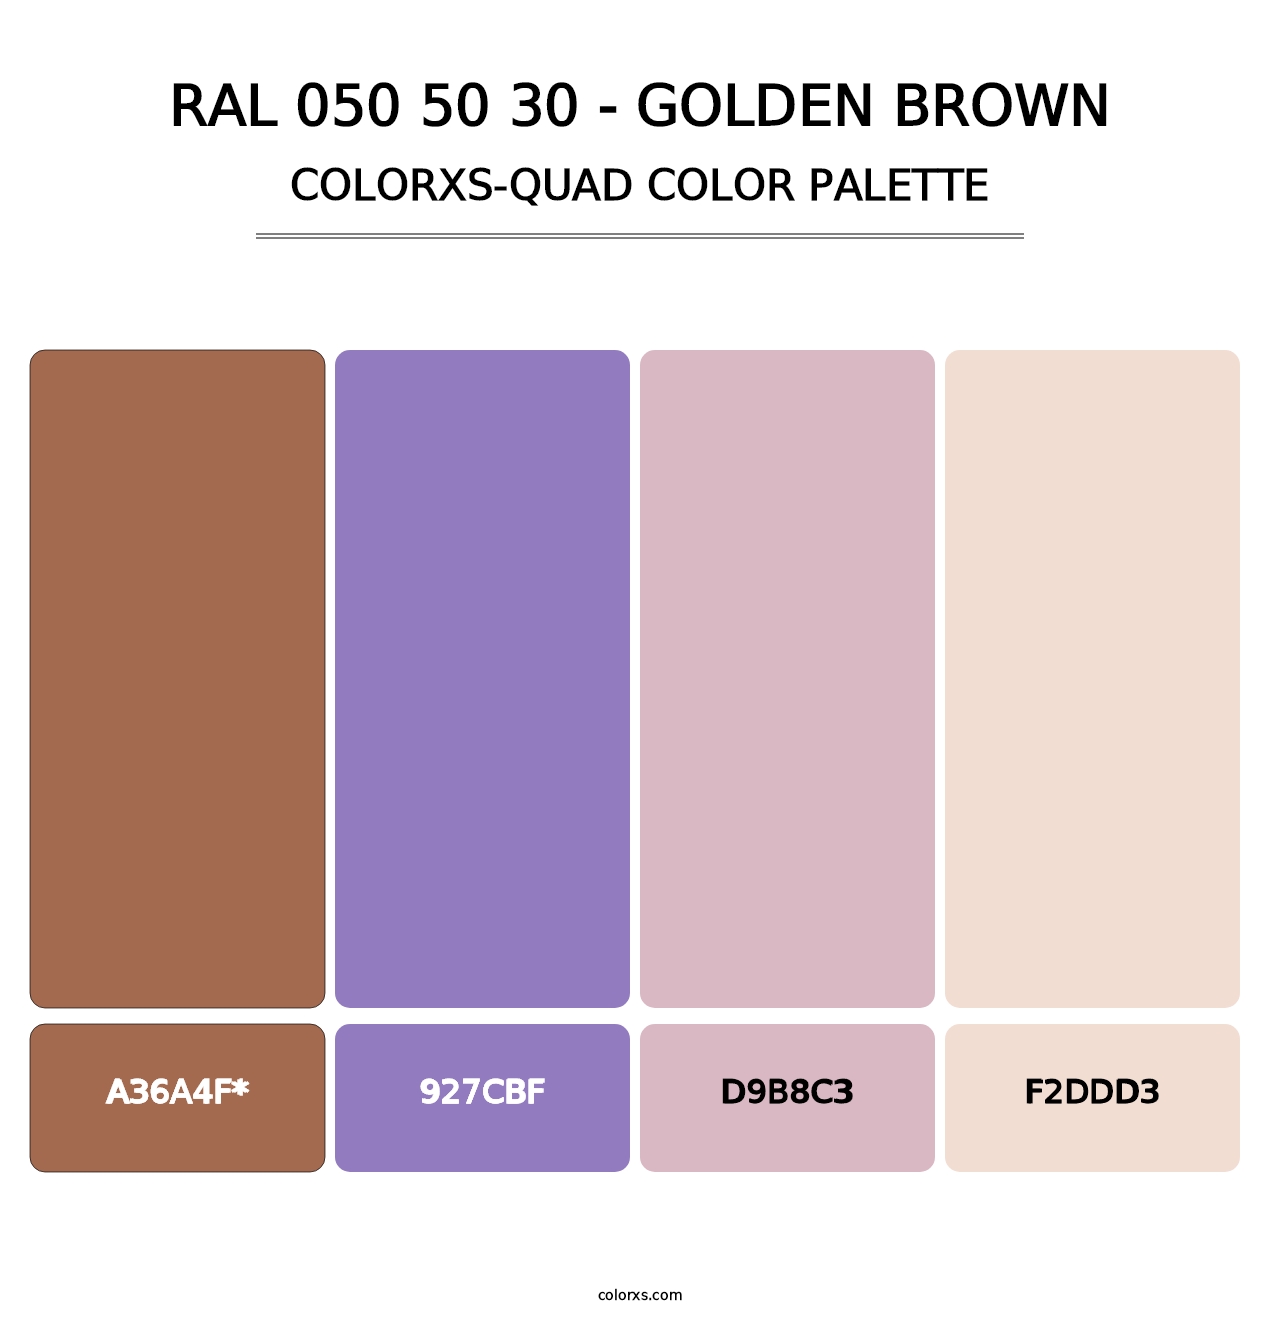 RAL 050 50 30 - Golden Brown - Colorxs Quad Palette